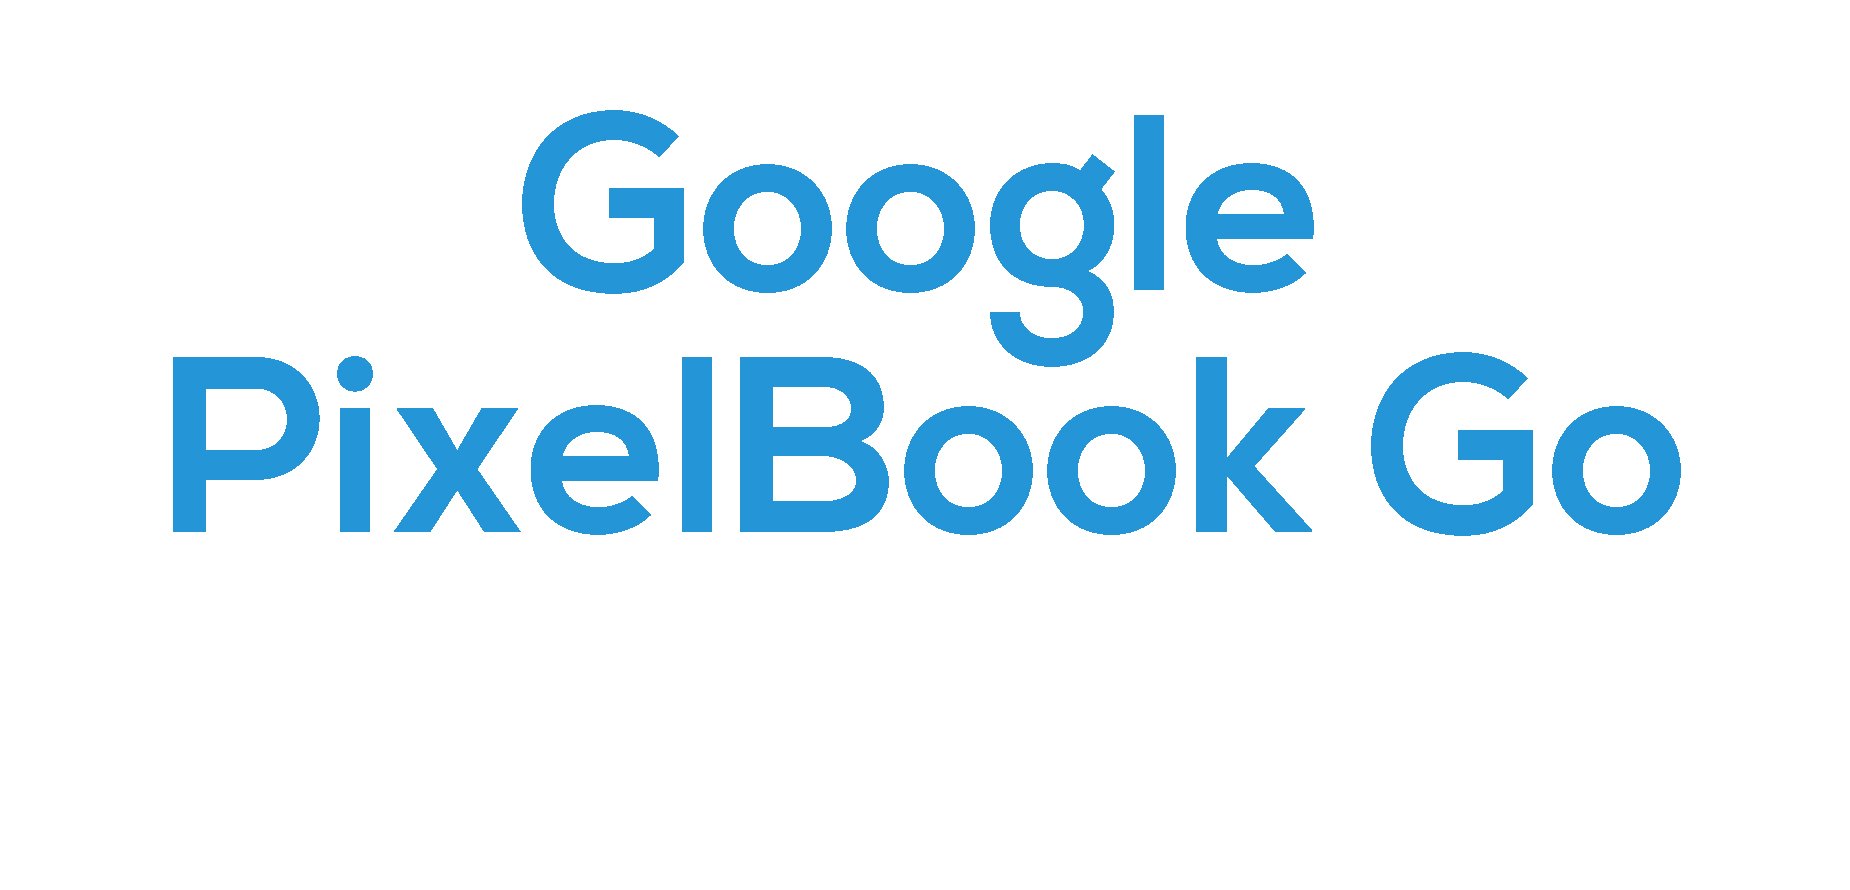 Google PixelBook GO